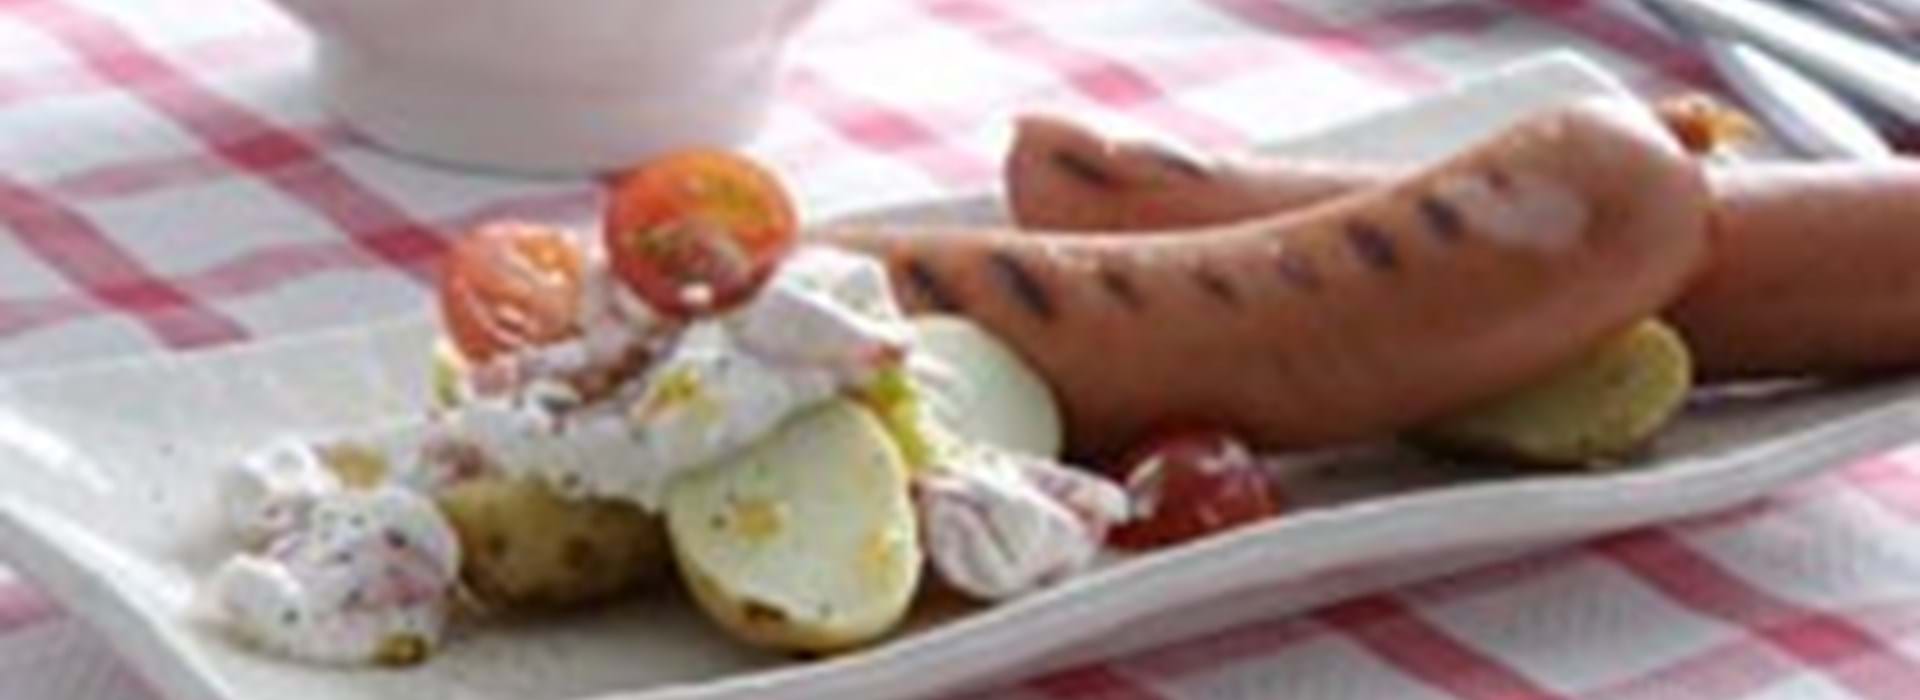 falskhed valse hjælper Pølser med nye kartofler og tomat dip - Se opskriften her